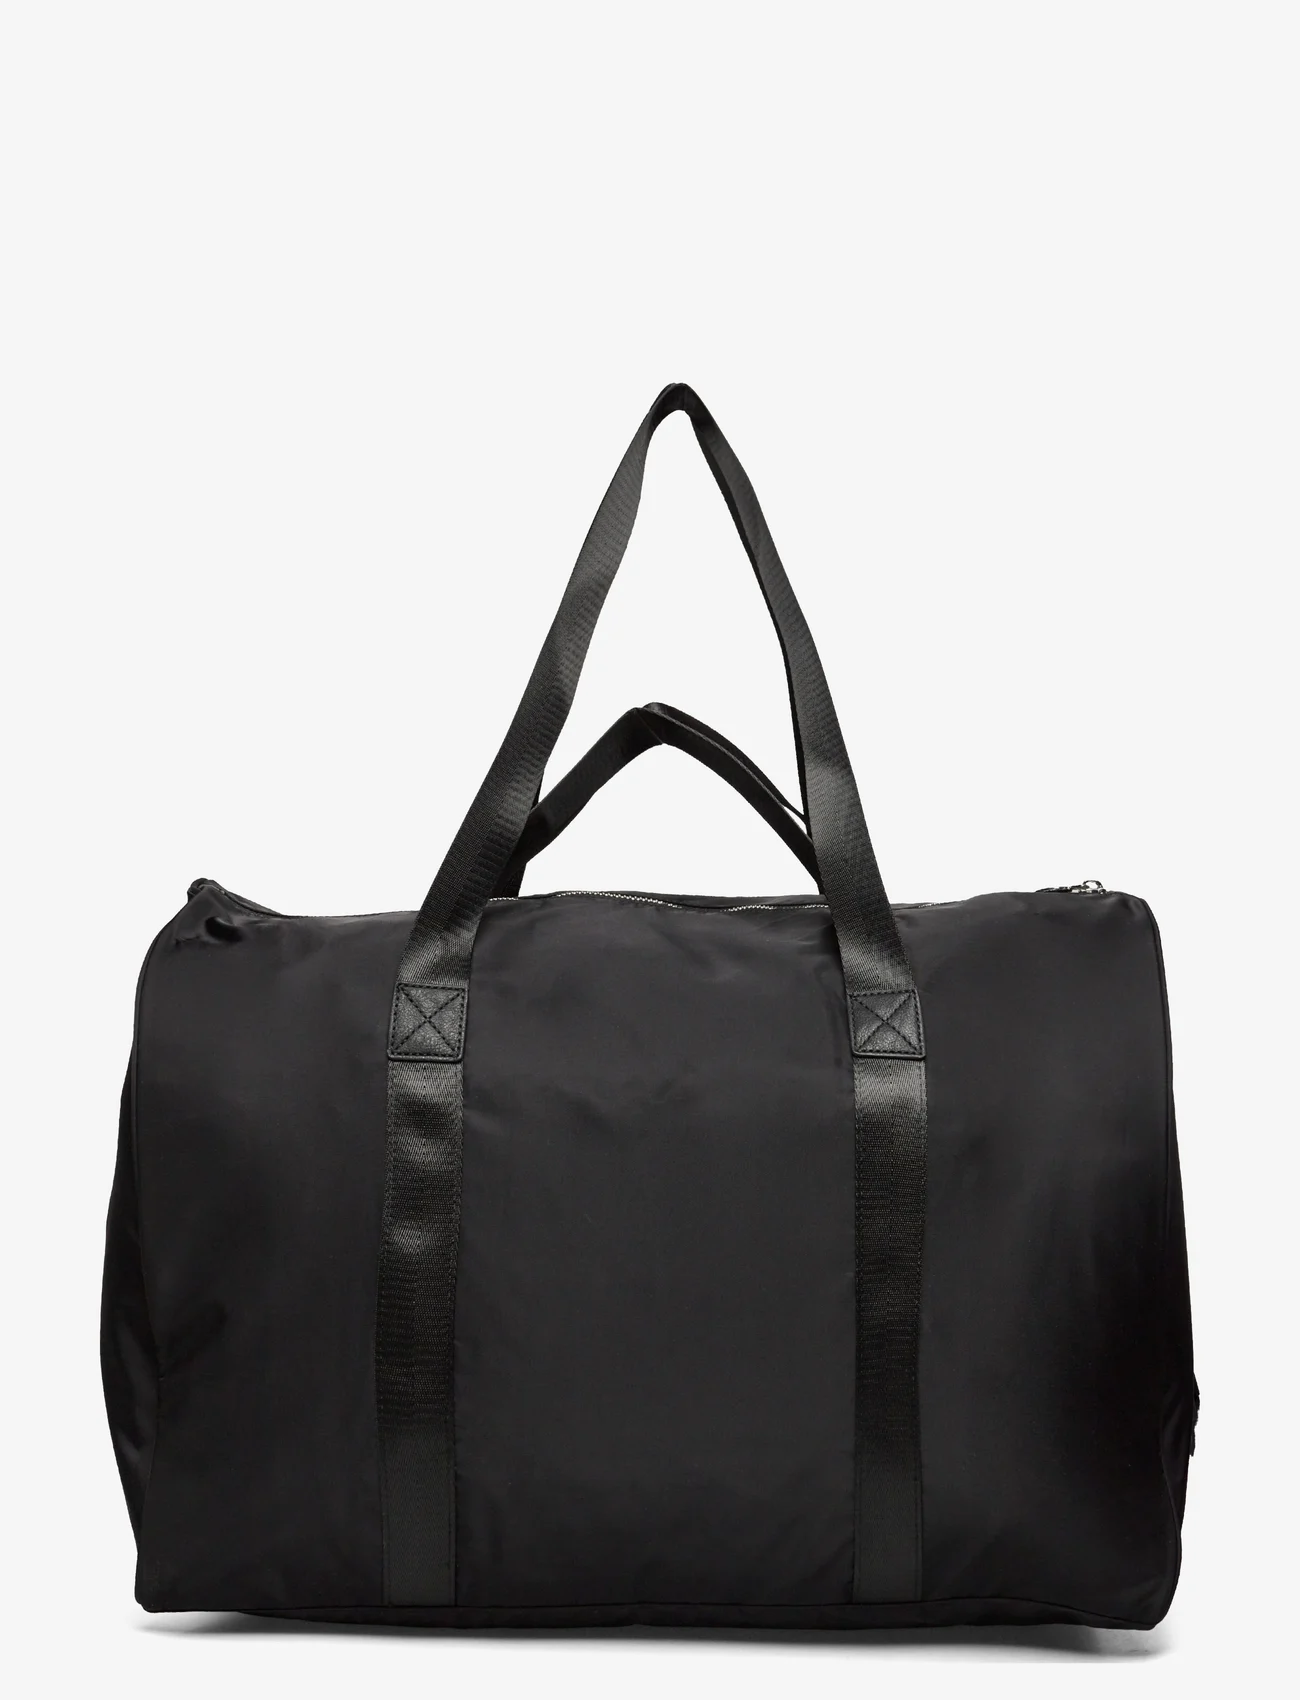 Rosemunde - Recycled weekend bag - weekender - black silver - 1